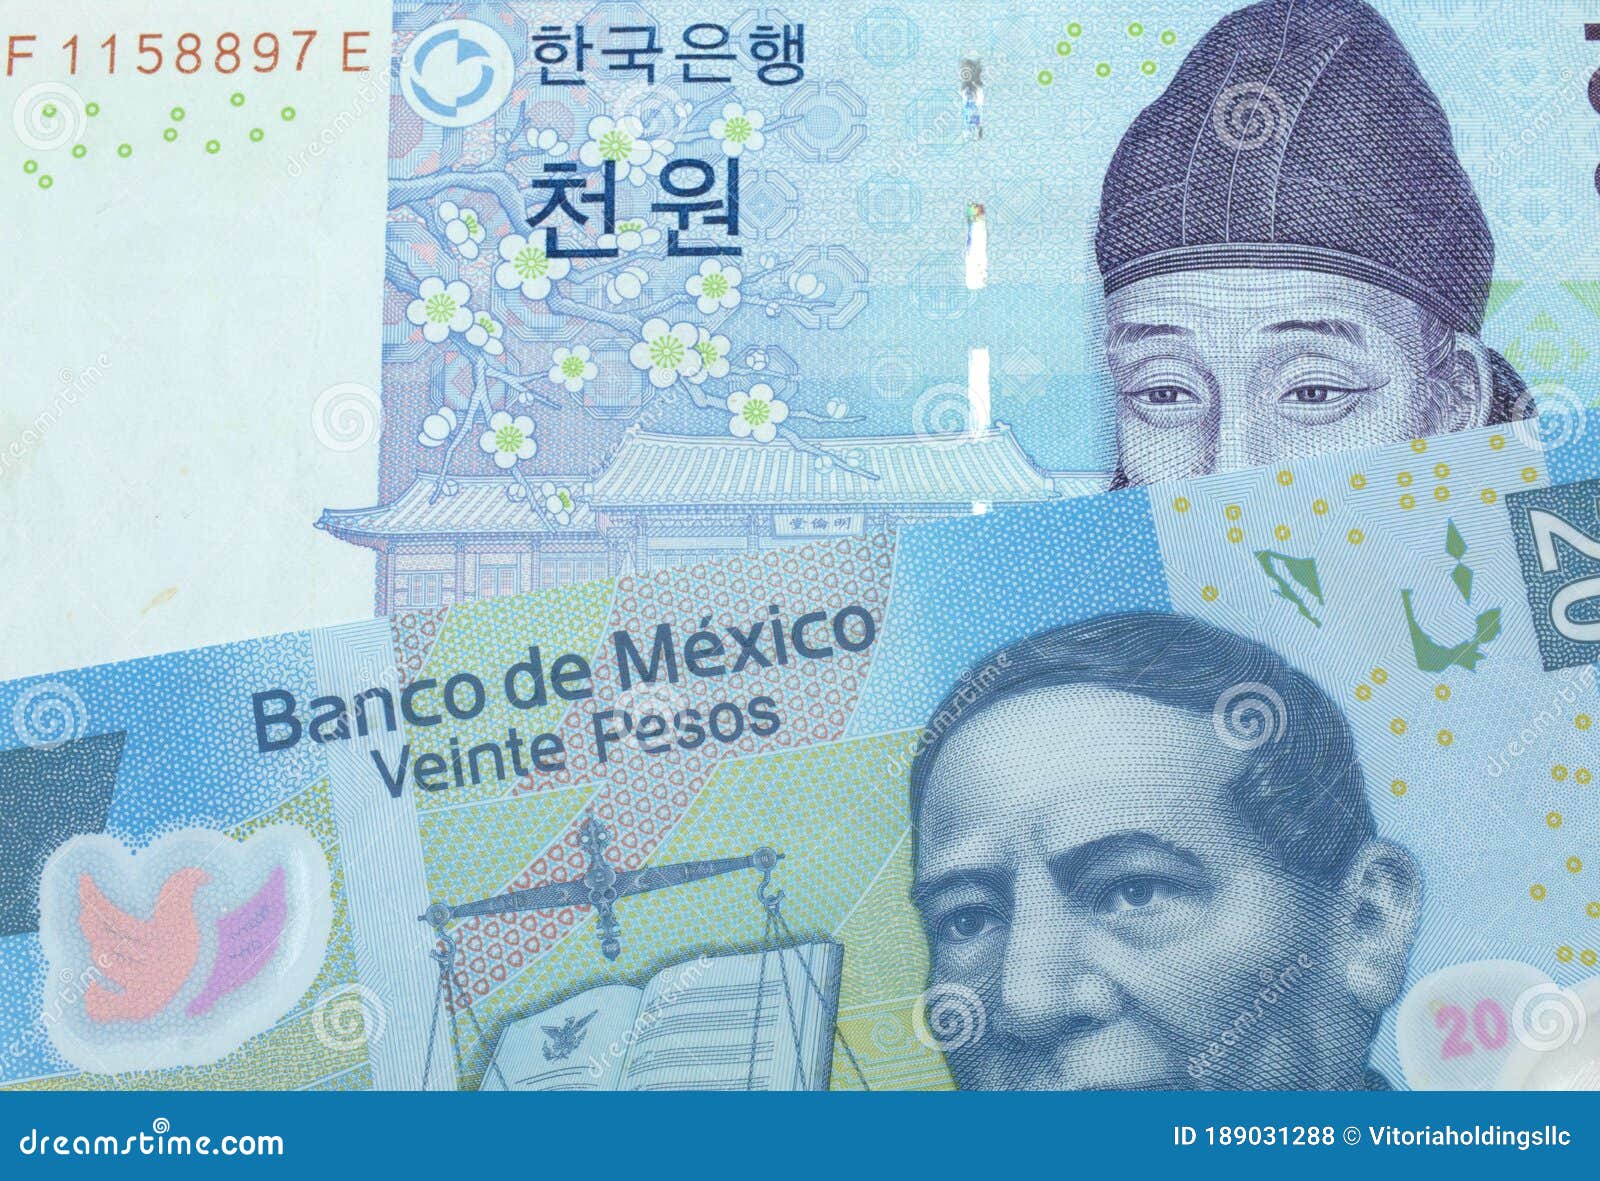 won a pesos